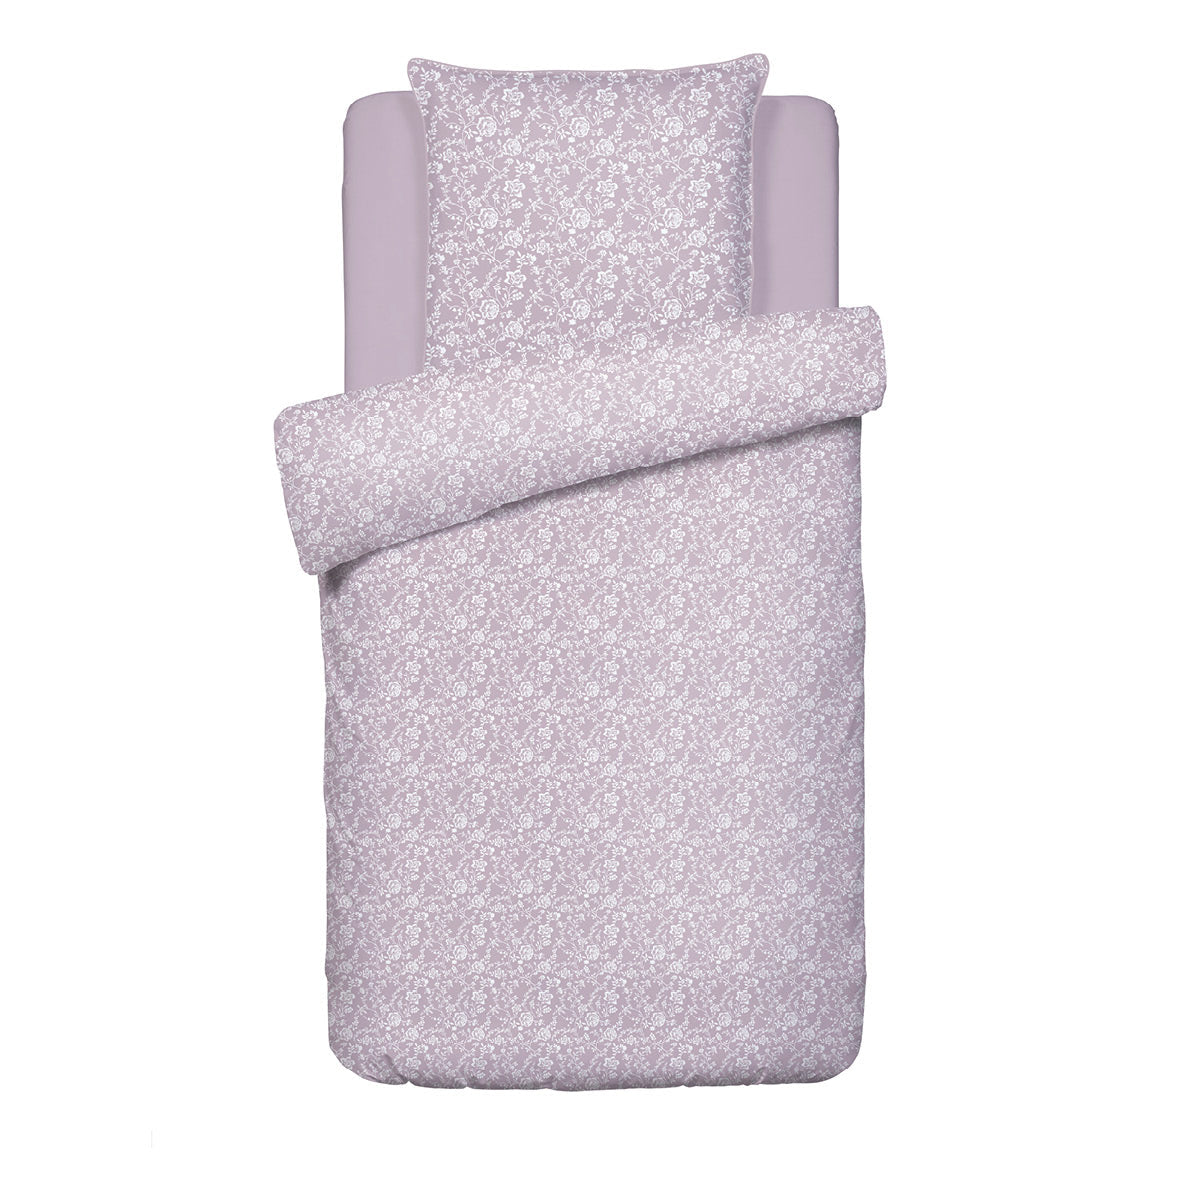 Duvet cover + pillowcase(s) cotton satin - Fleurs Lavender